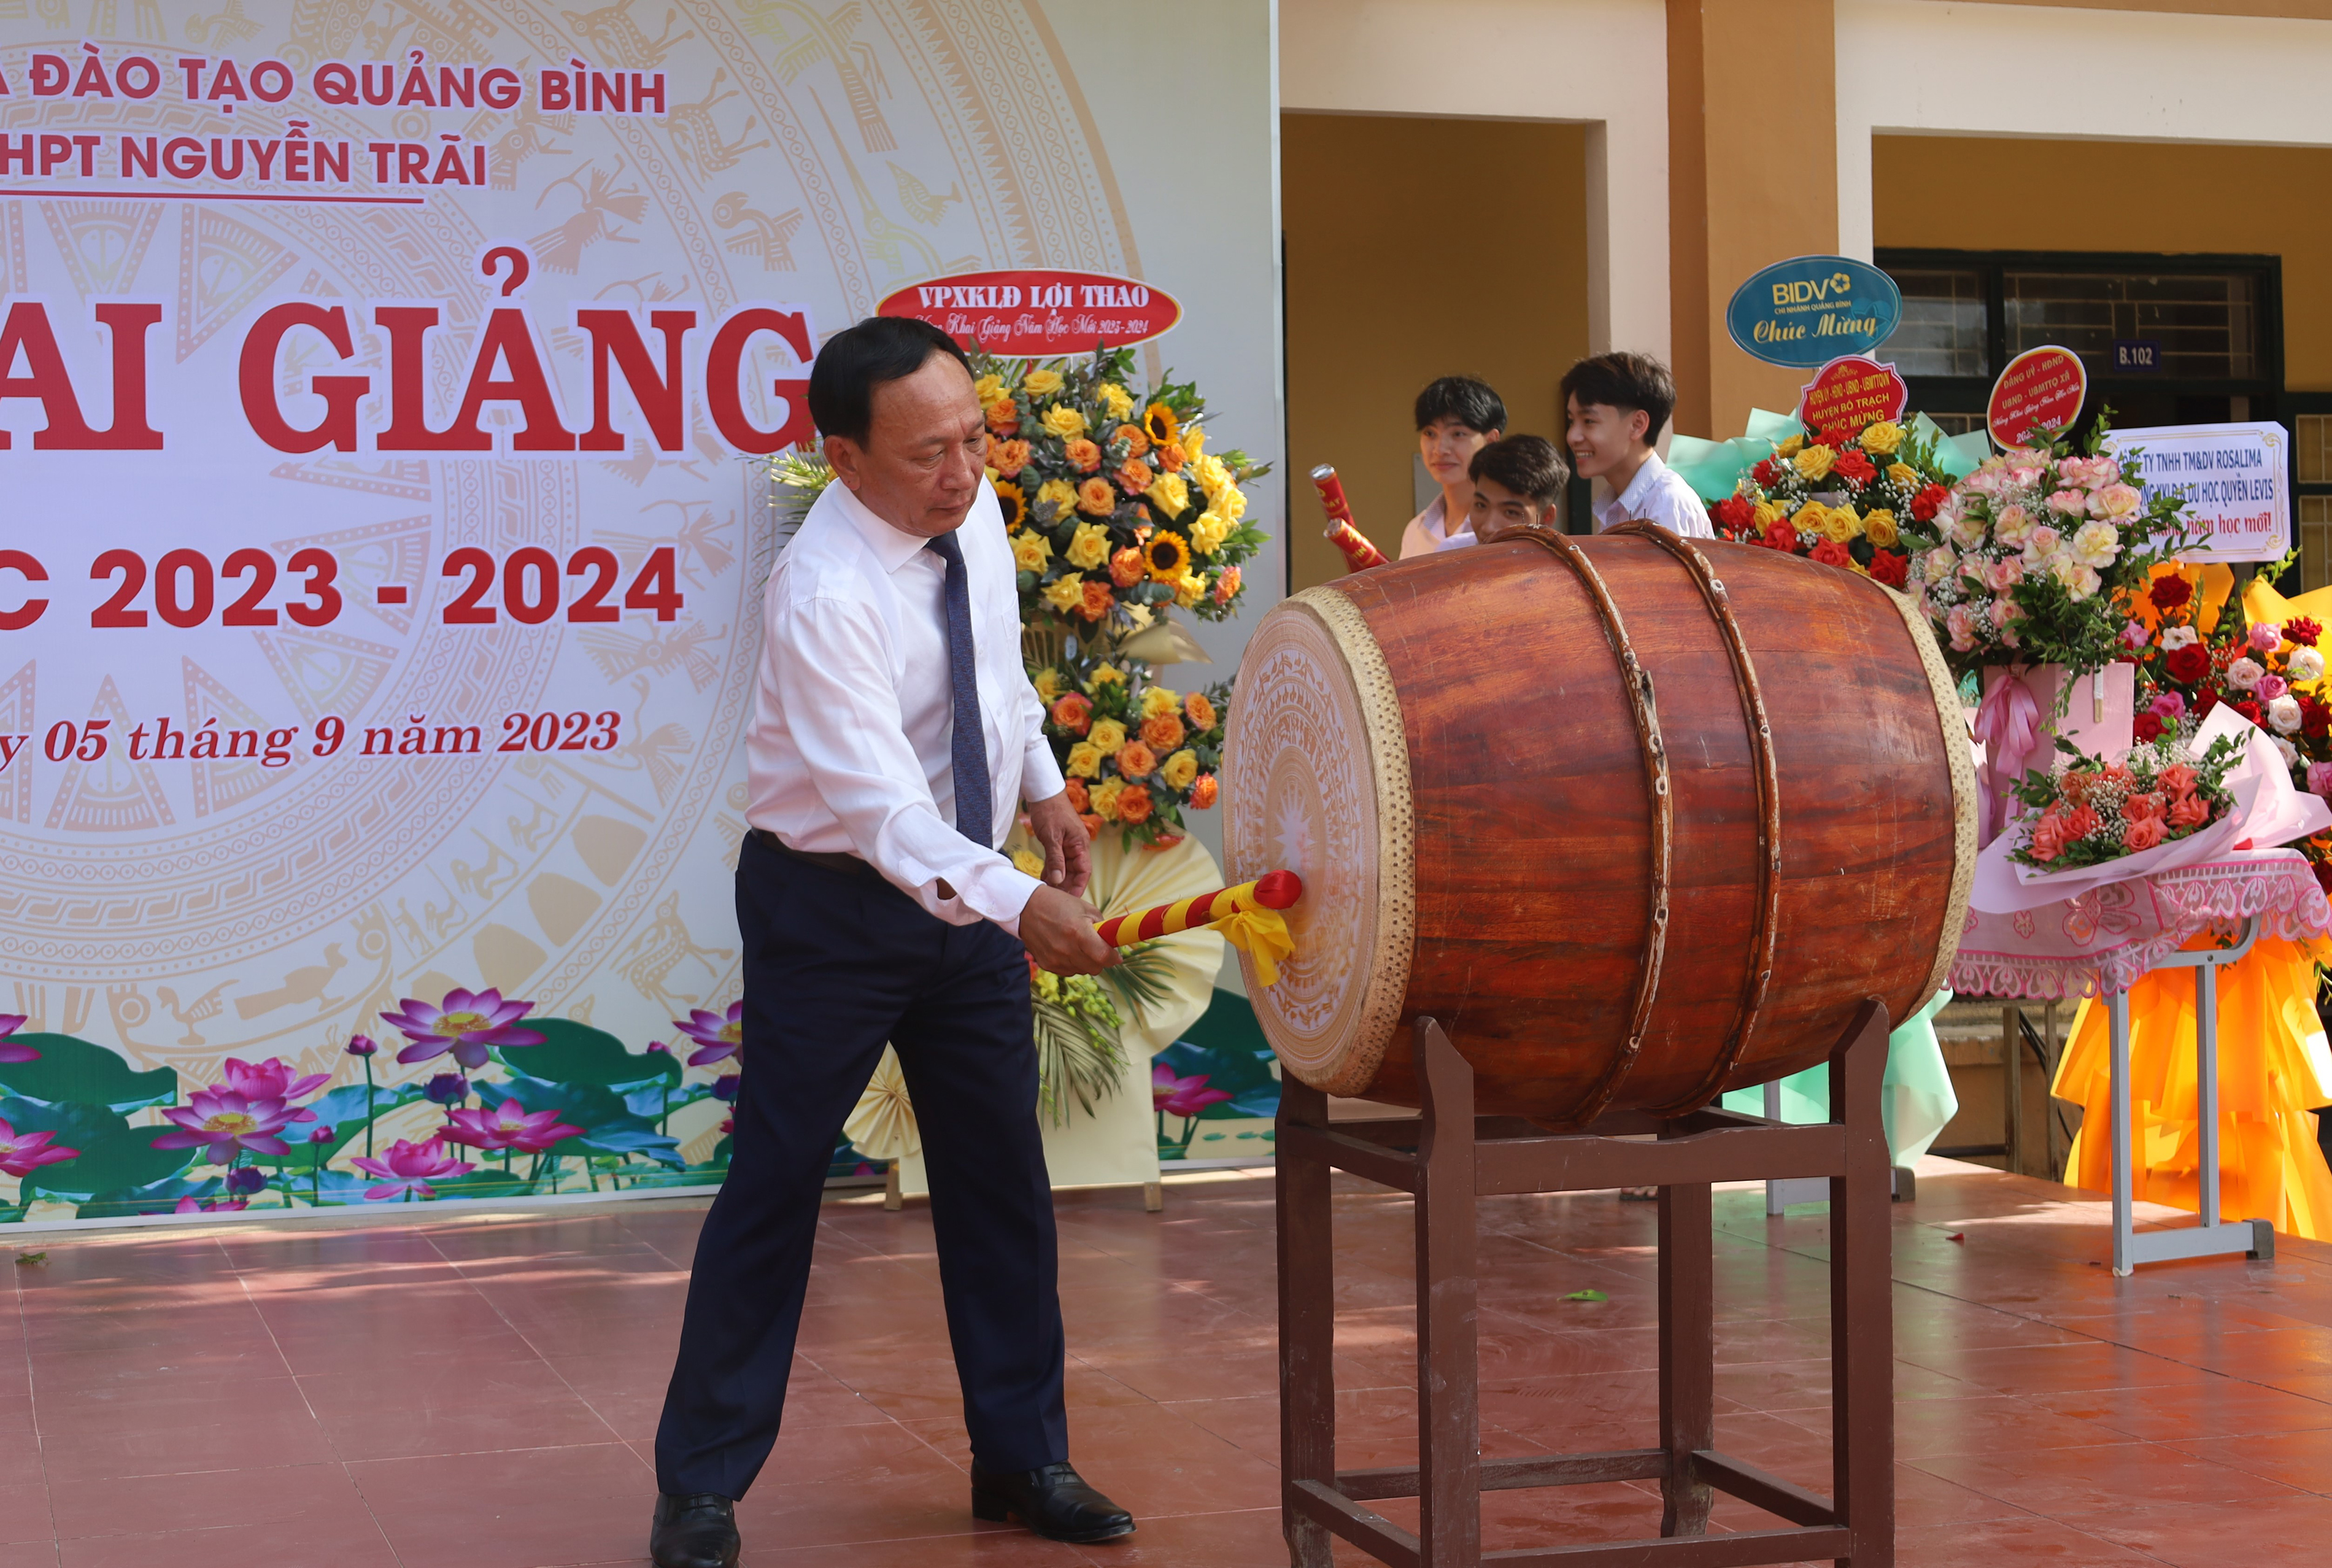 Đồng chí Phó Bí thư Thường trực Tỉnh ủy Trần Hải Châu đánh hồi trống khai giảng năm học mới 2023-2024 tại Trường THPT Nguyễn Trãi.